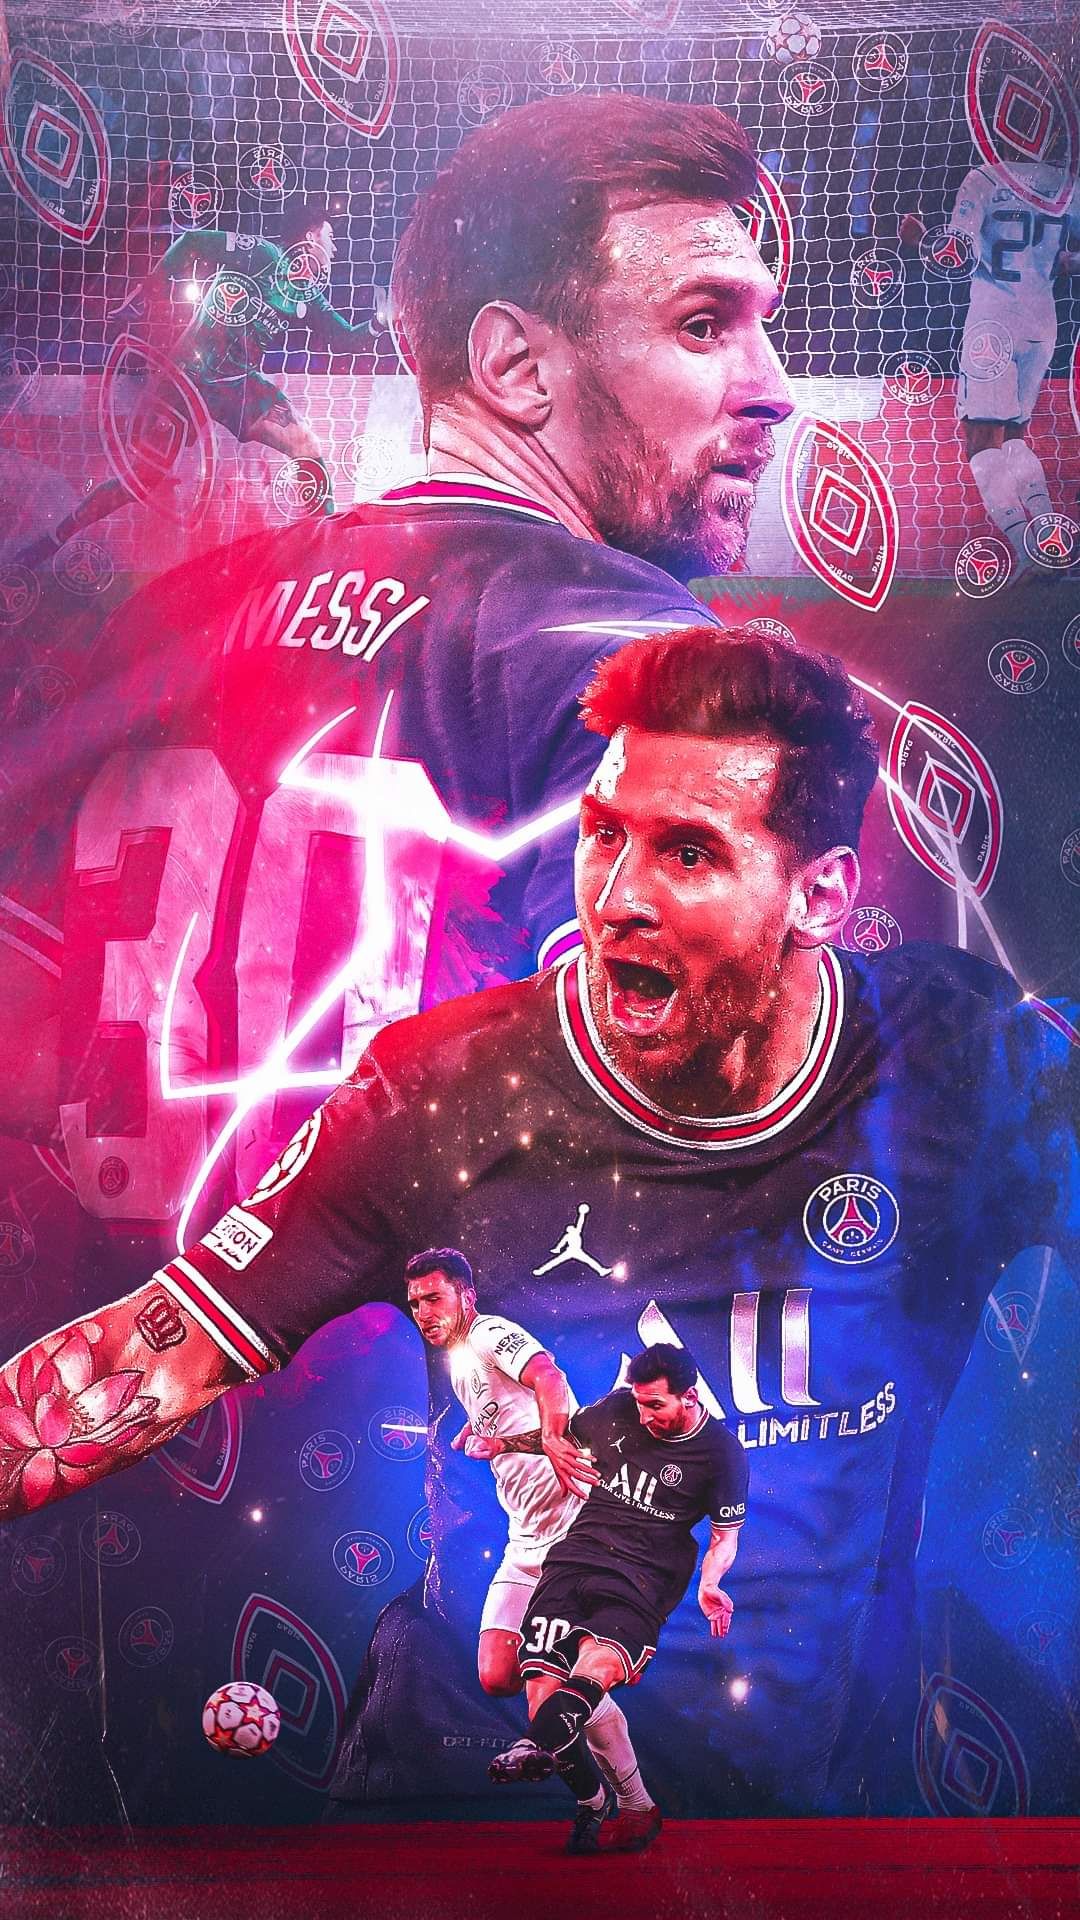 Hình nền Ipad Messi 2022 - Với sự chuyển giao ngoạn mục từ Barcelona sang Paris Saint-Germain, Messi đang sẵn sàng cho một mùa giải đỉnh cao trên mặt trận mới. Hãy sắm cho mình những bức hình nền Ipad cập nhật nhất để cổ vũ cho thần tượng của bạn và chào đón năm 2022 đầy hứa hẹn!